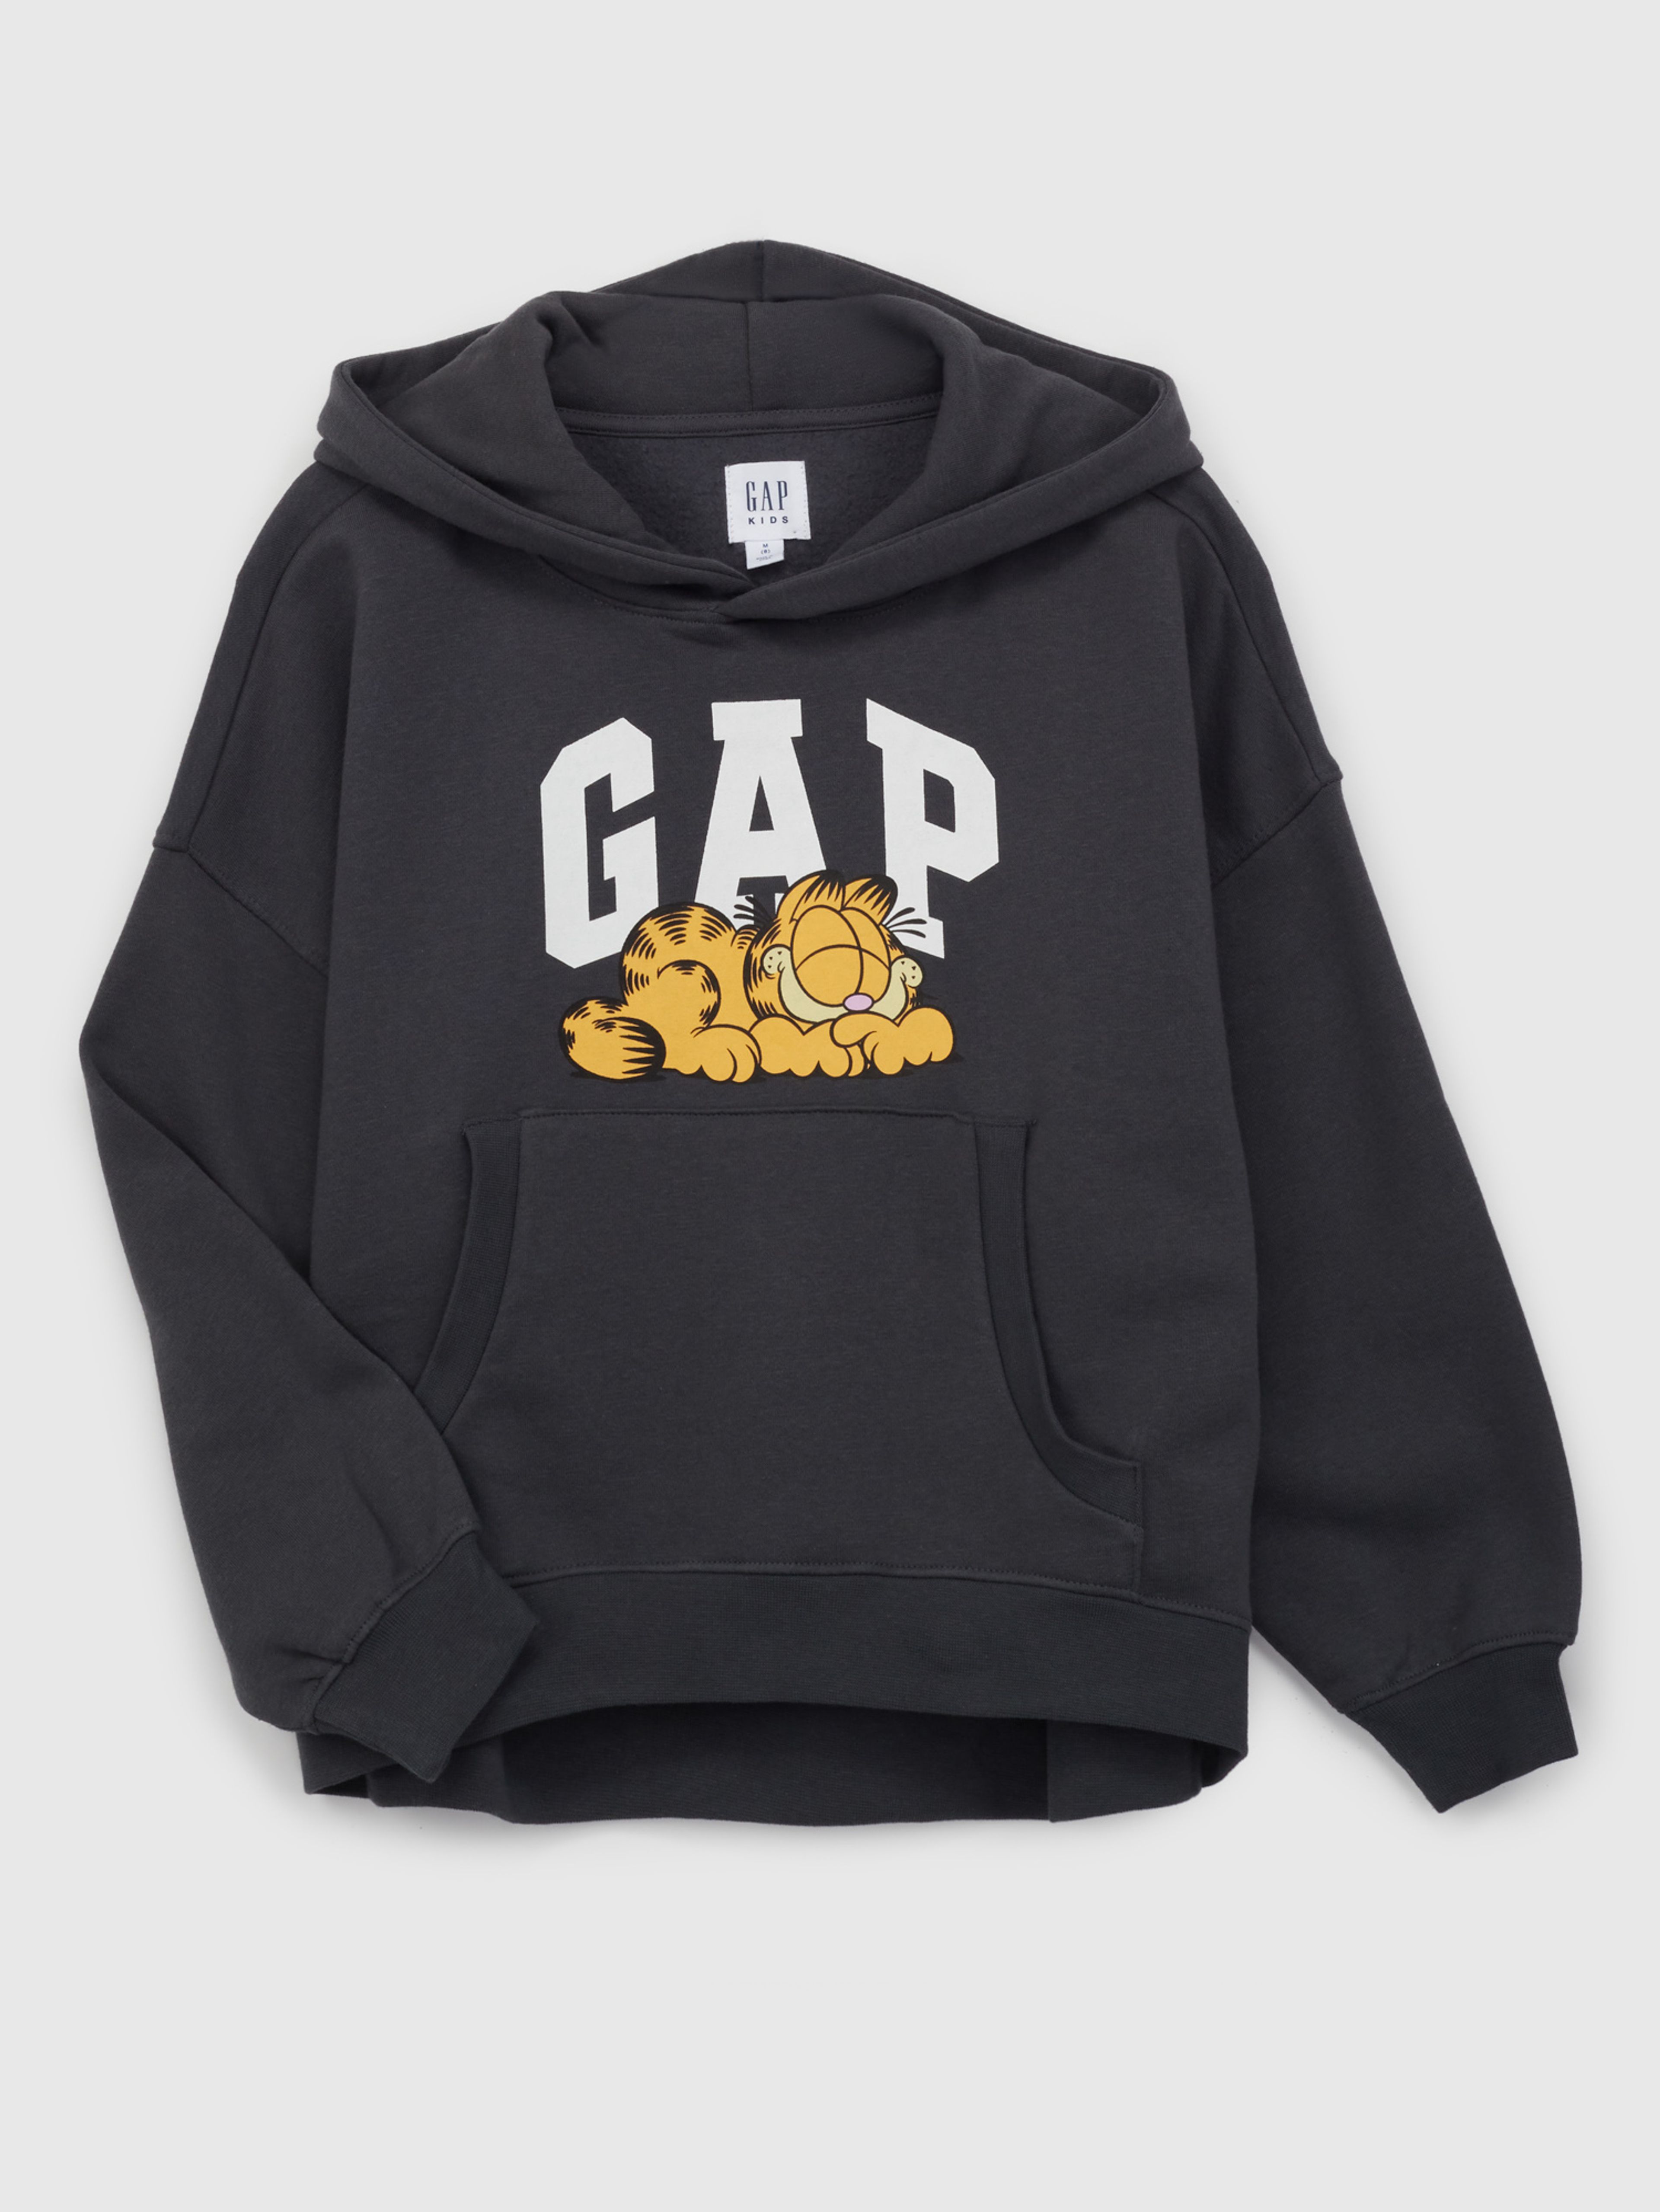 Kinder Sweatshirt mit Logo GAP & Garfield